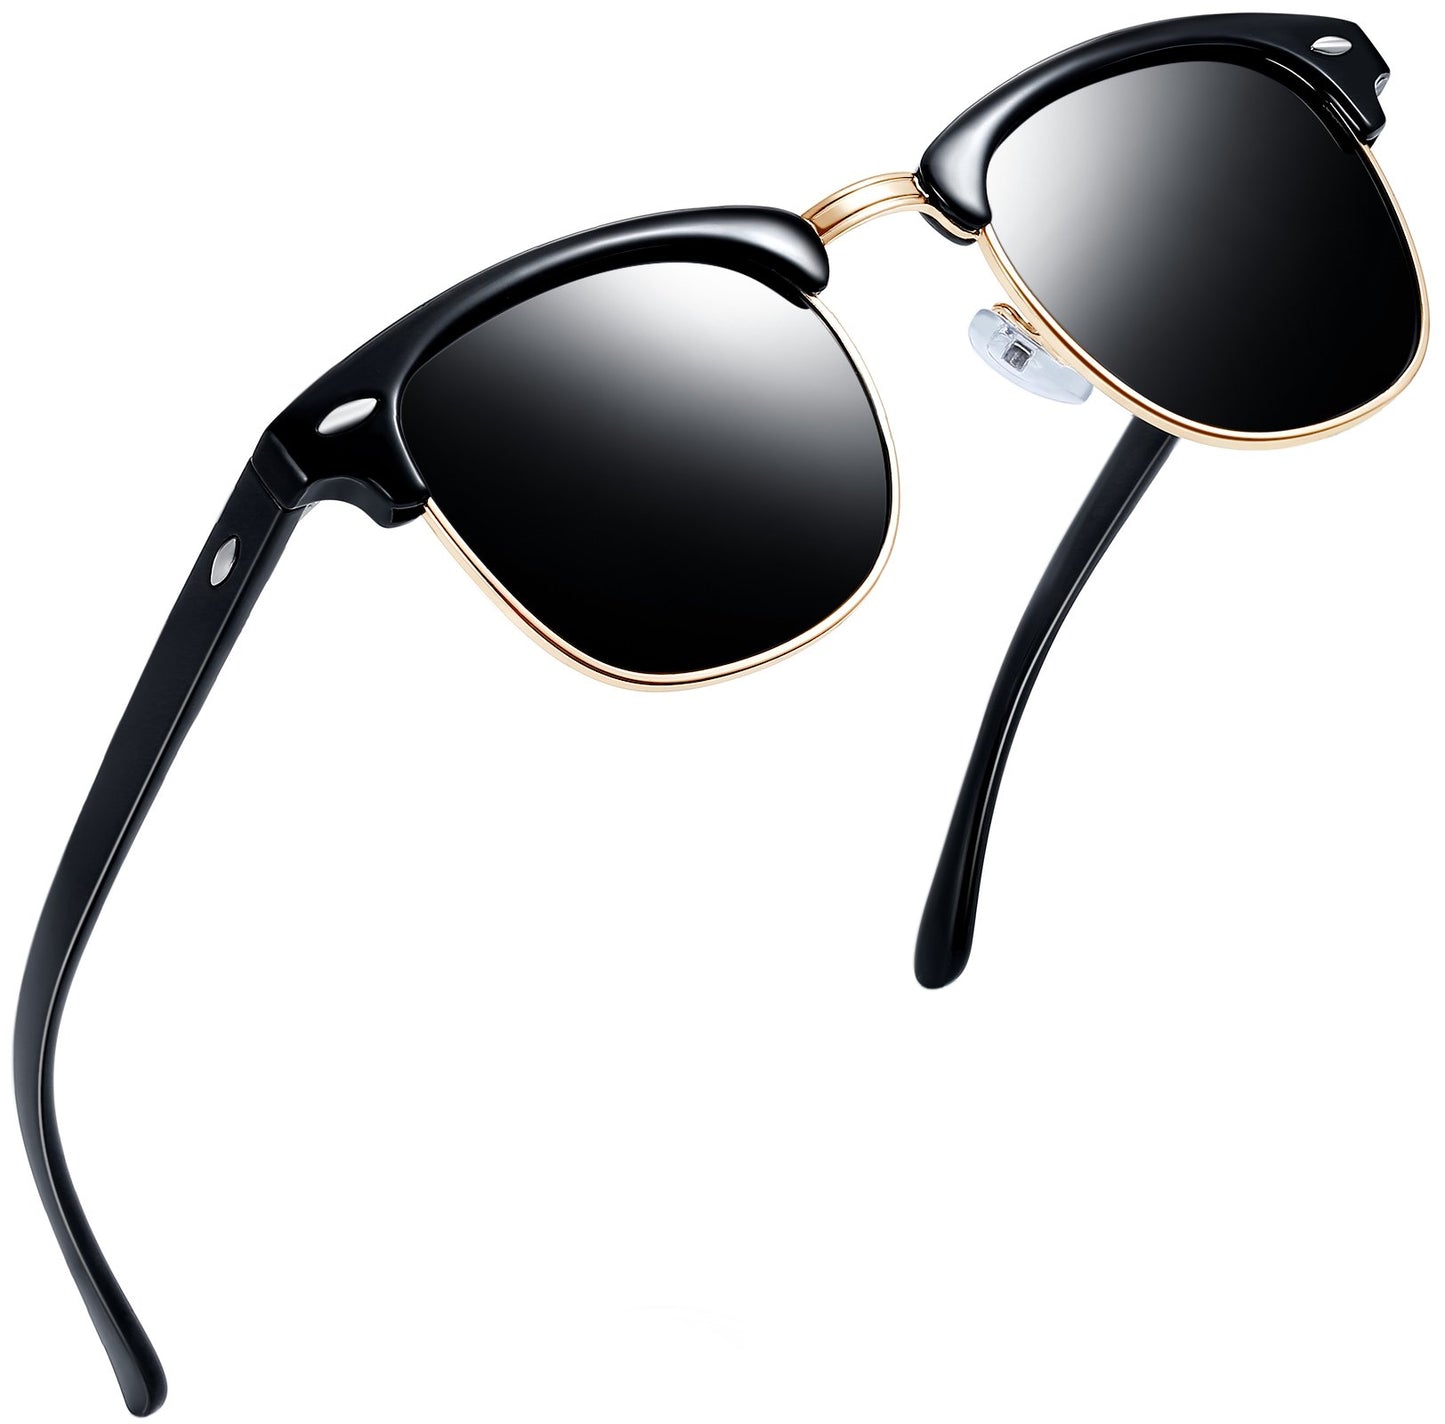 Joopin Semi Rimless Sunglasses Horn Rimmed Sun Glasses Polarized UV400 Half Frame Shades for Men Women (Black Simple Packaging)